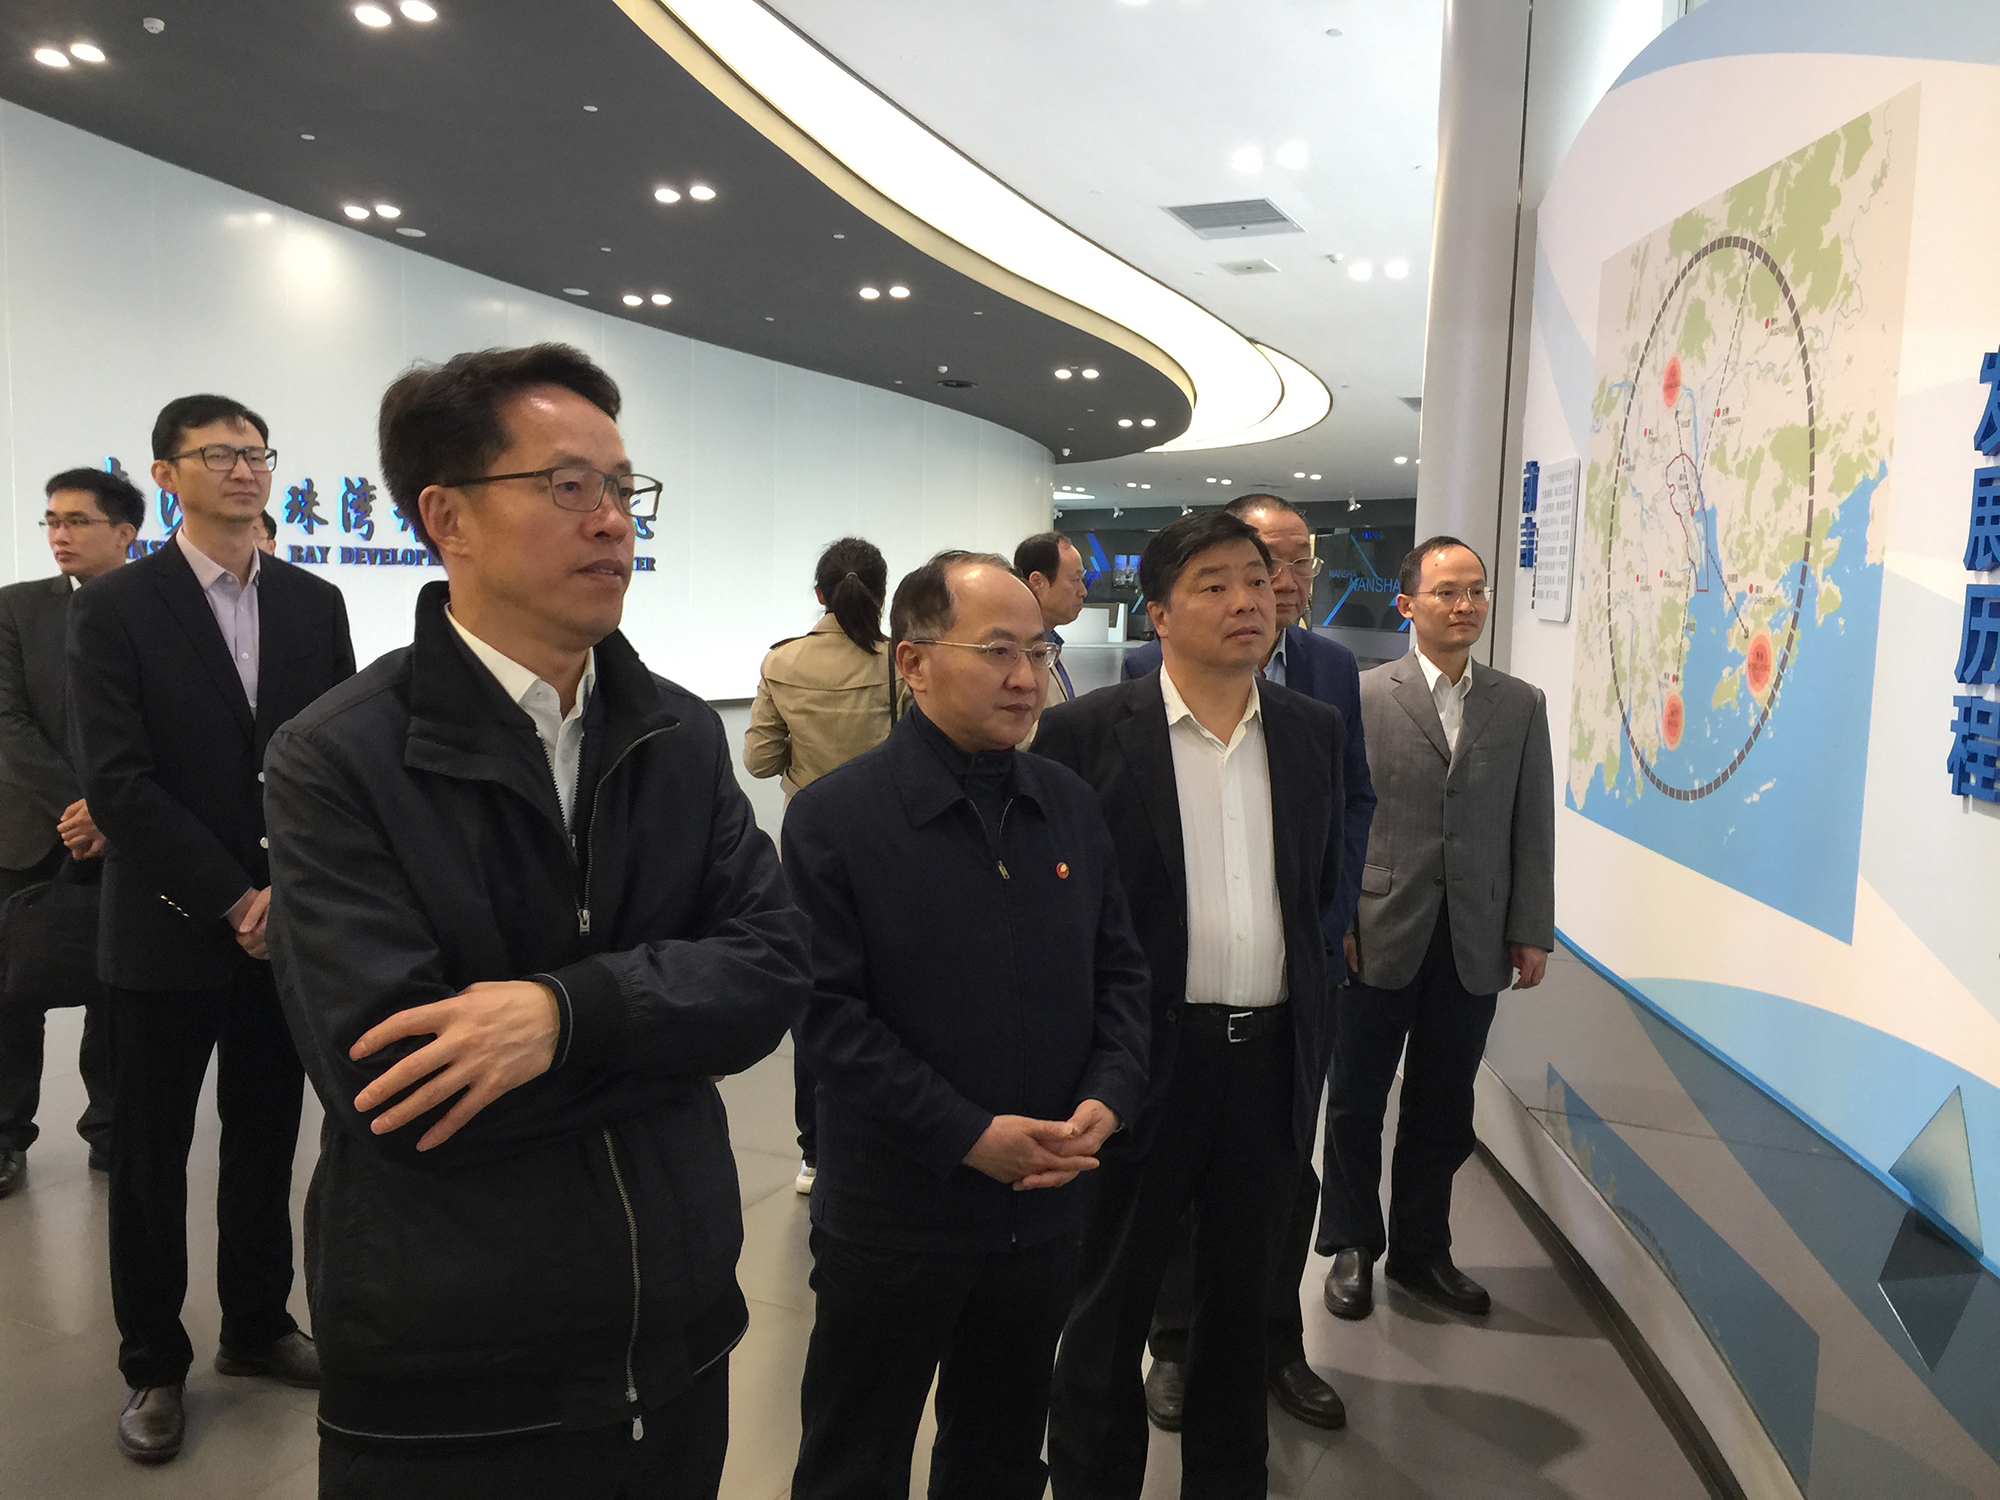 3月24日A在廣州南沙新區明珠灣開發展覽中心聽取南沙建設情況介紹C